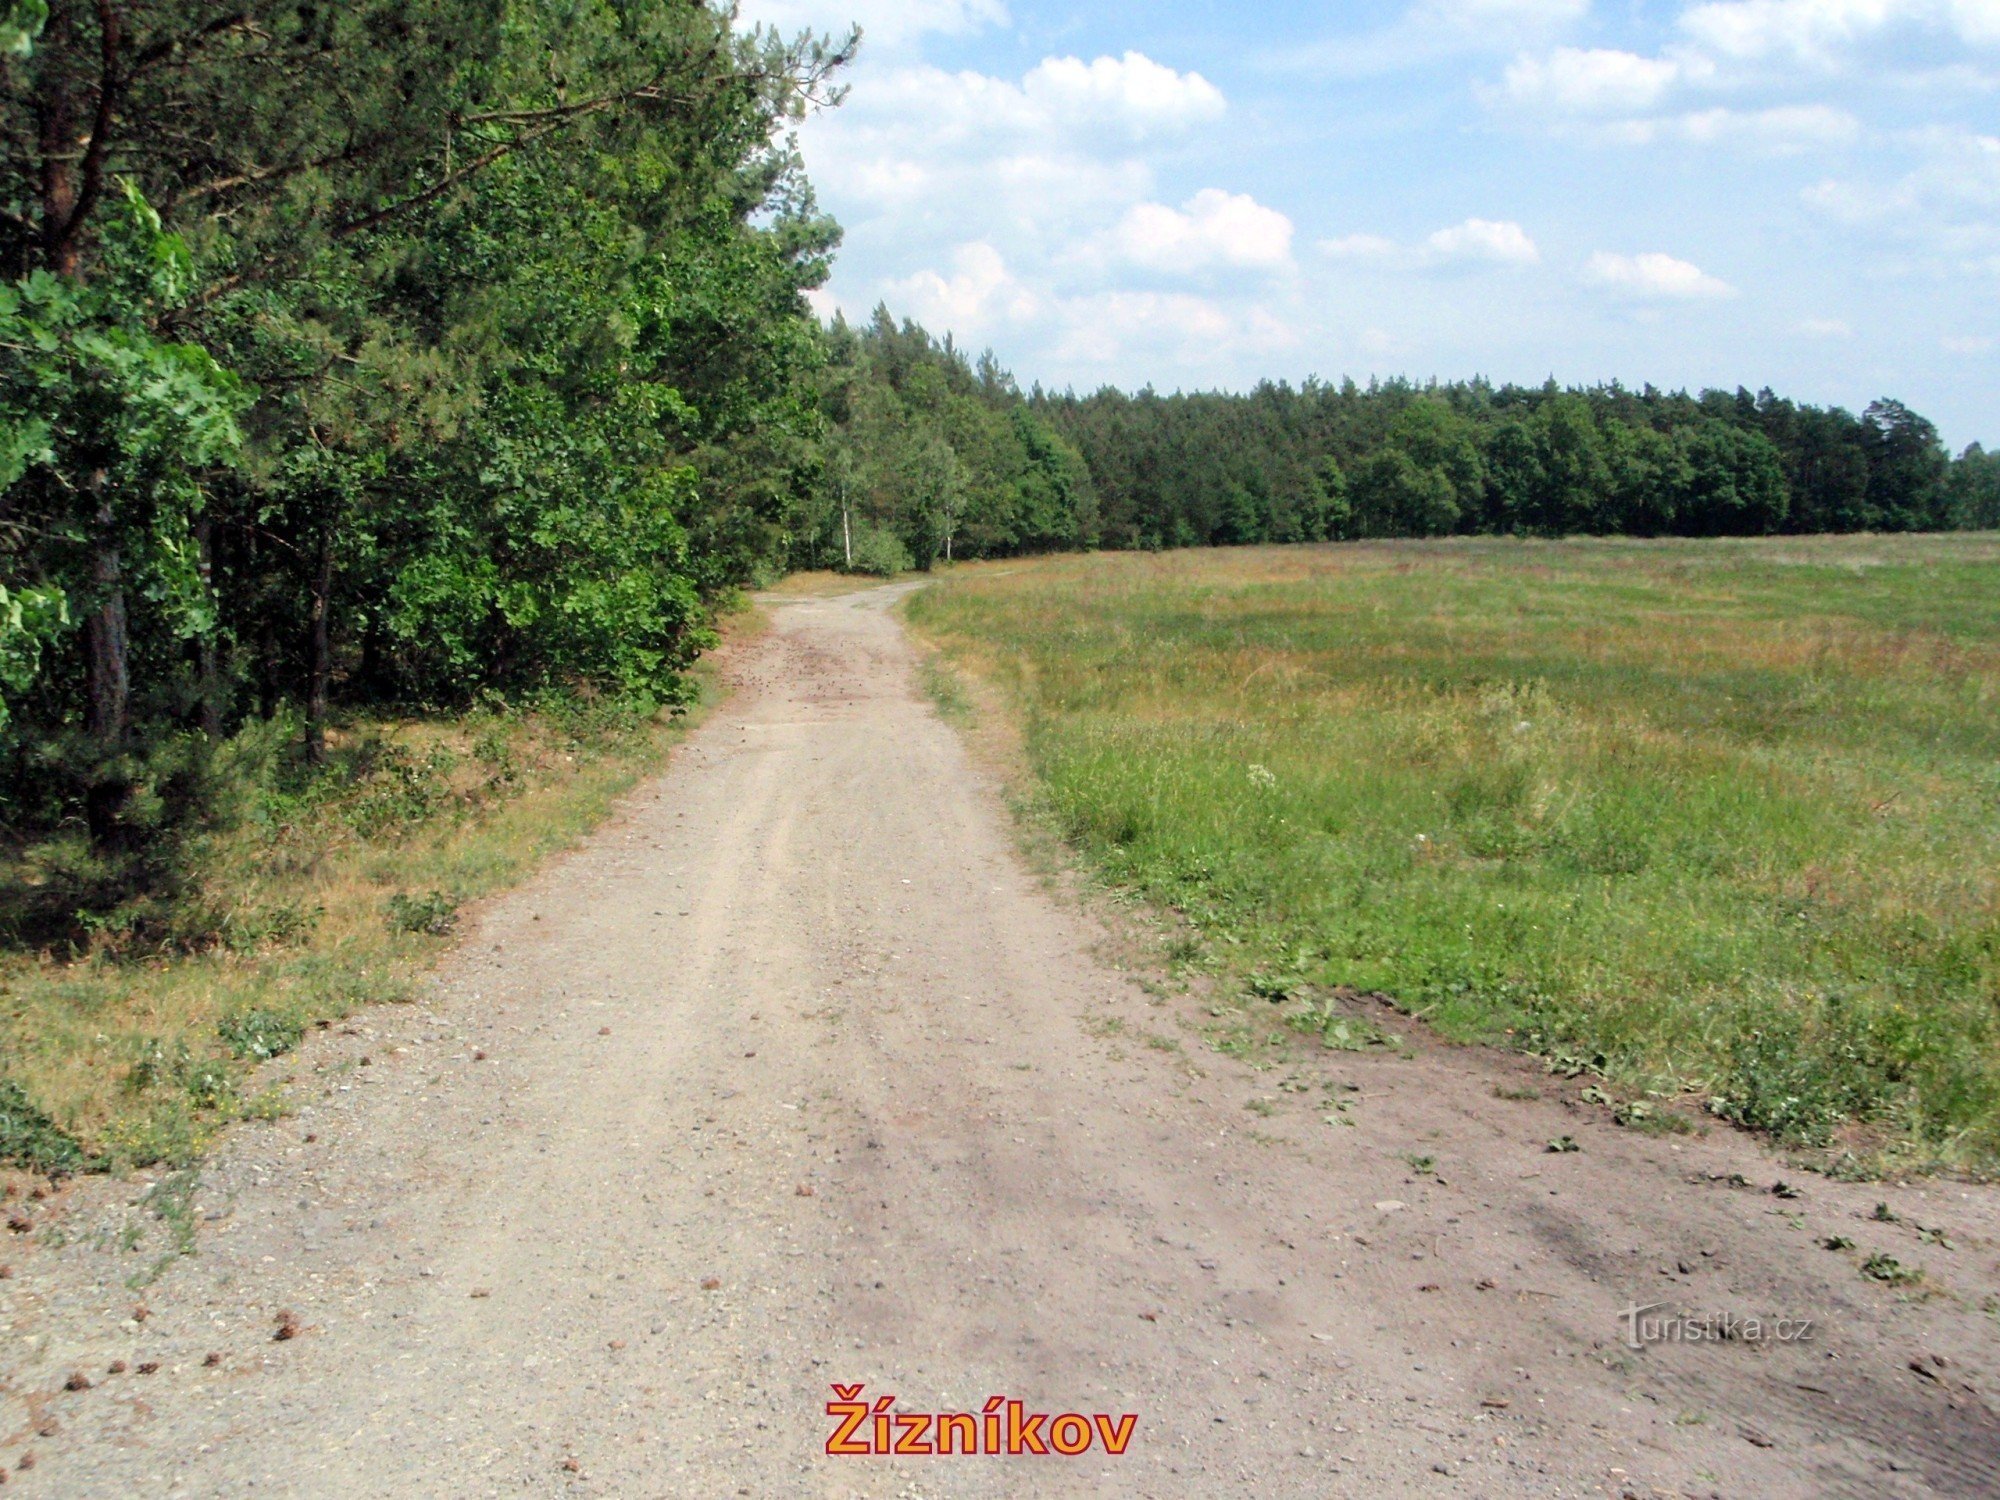 齐兹尼科夫附近的道路